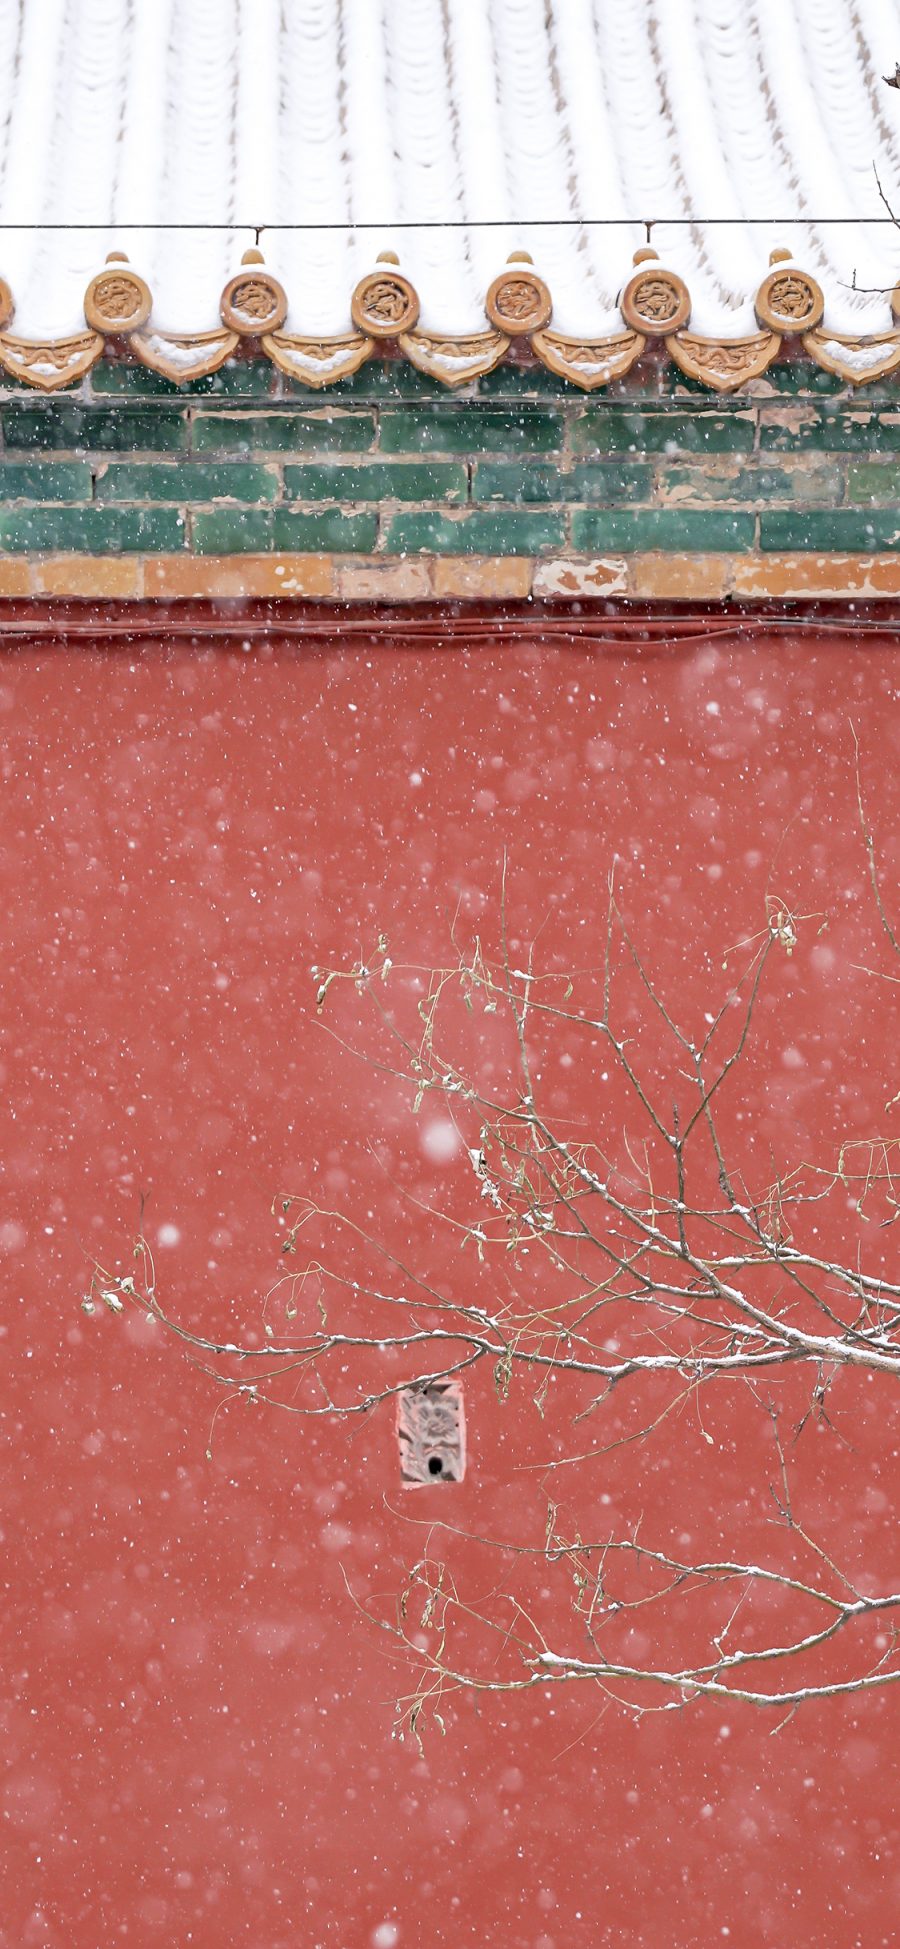 [2436×1125]故宫 瓦片 建筑 红色 下雪 紫禁城 苹果手机壁纸图片